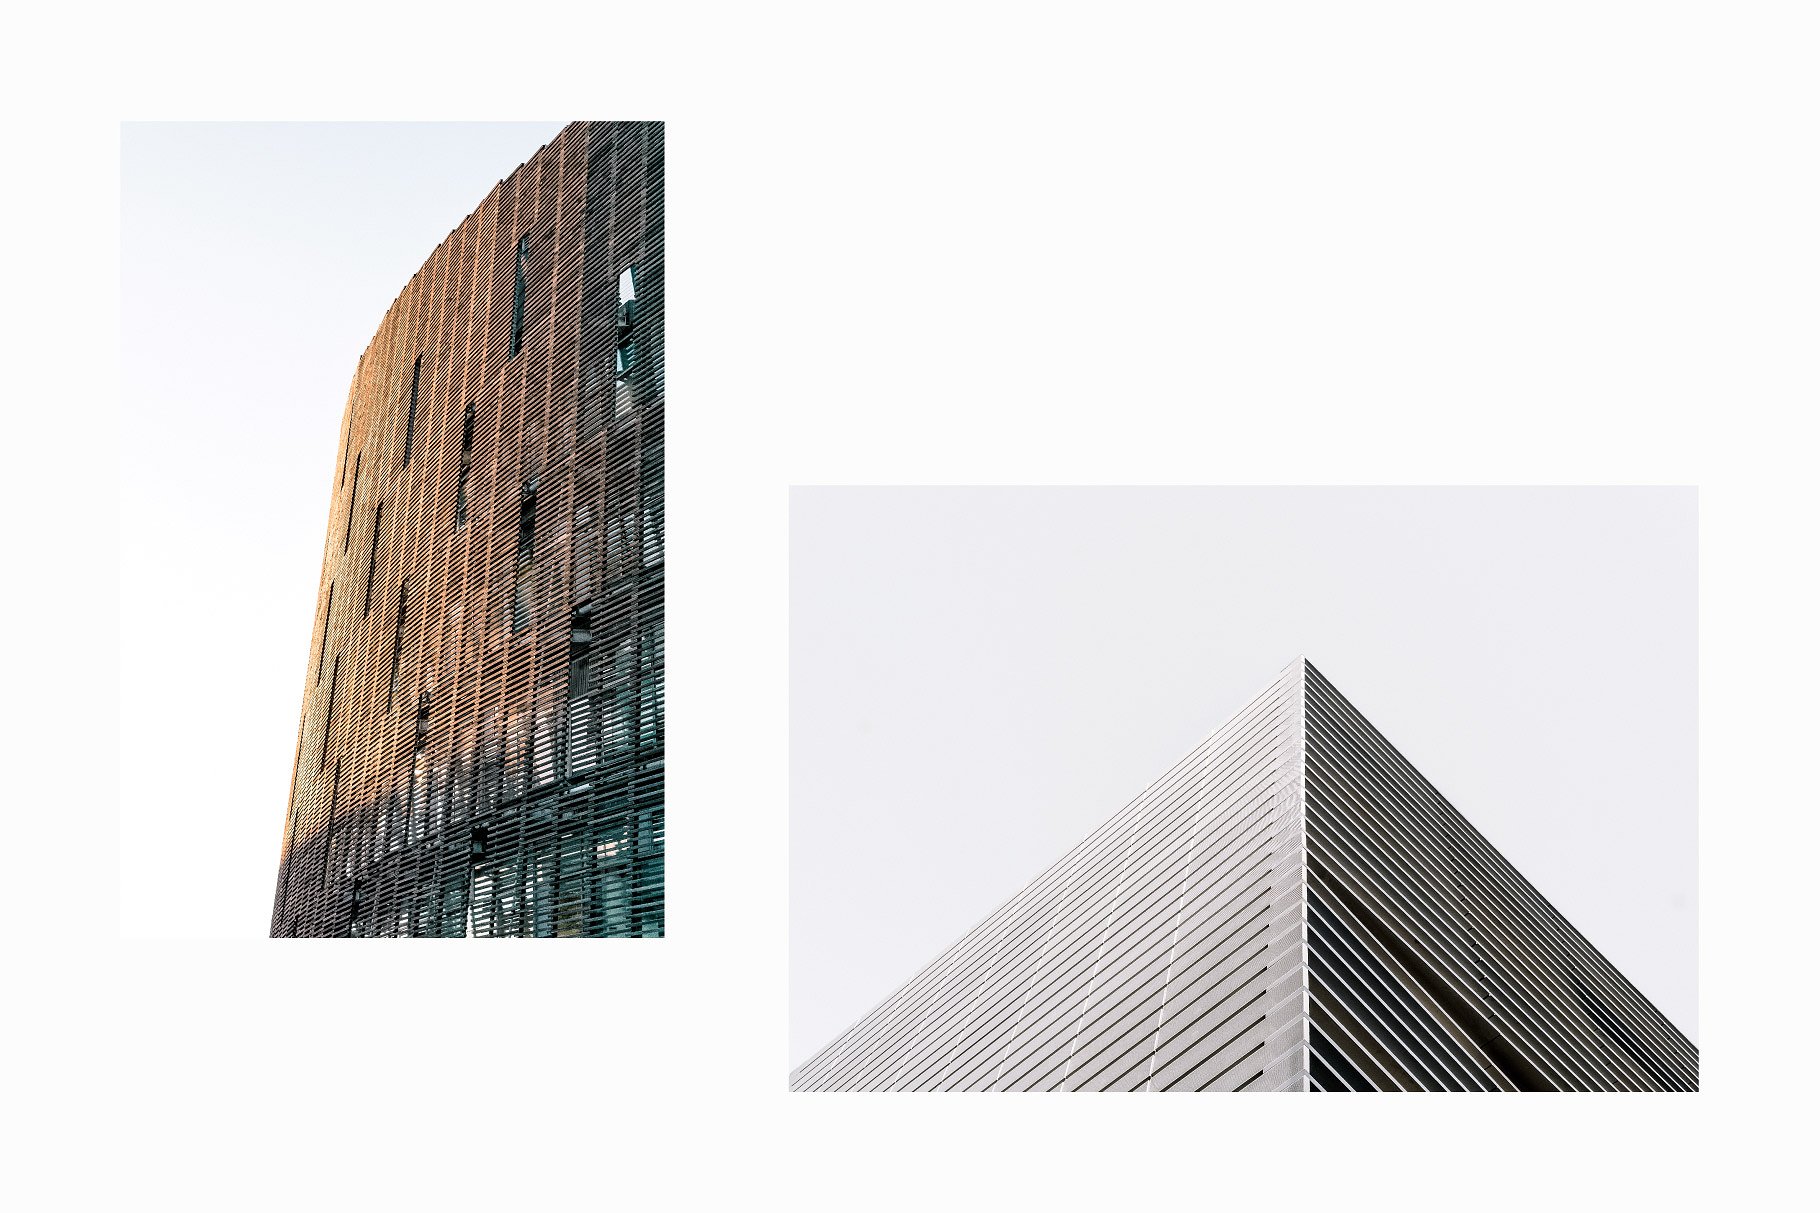 10张高分辨率建筑照片V.3 10 Architecture Photos Pack Vol.3插图(2)